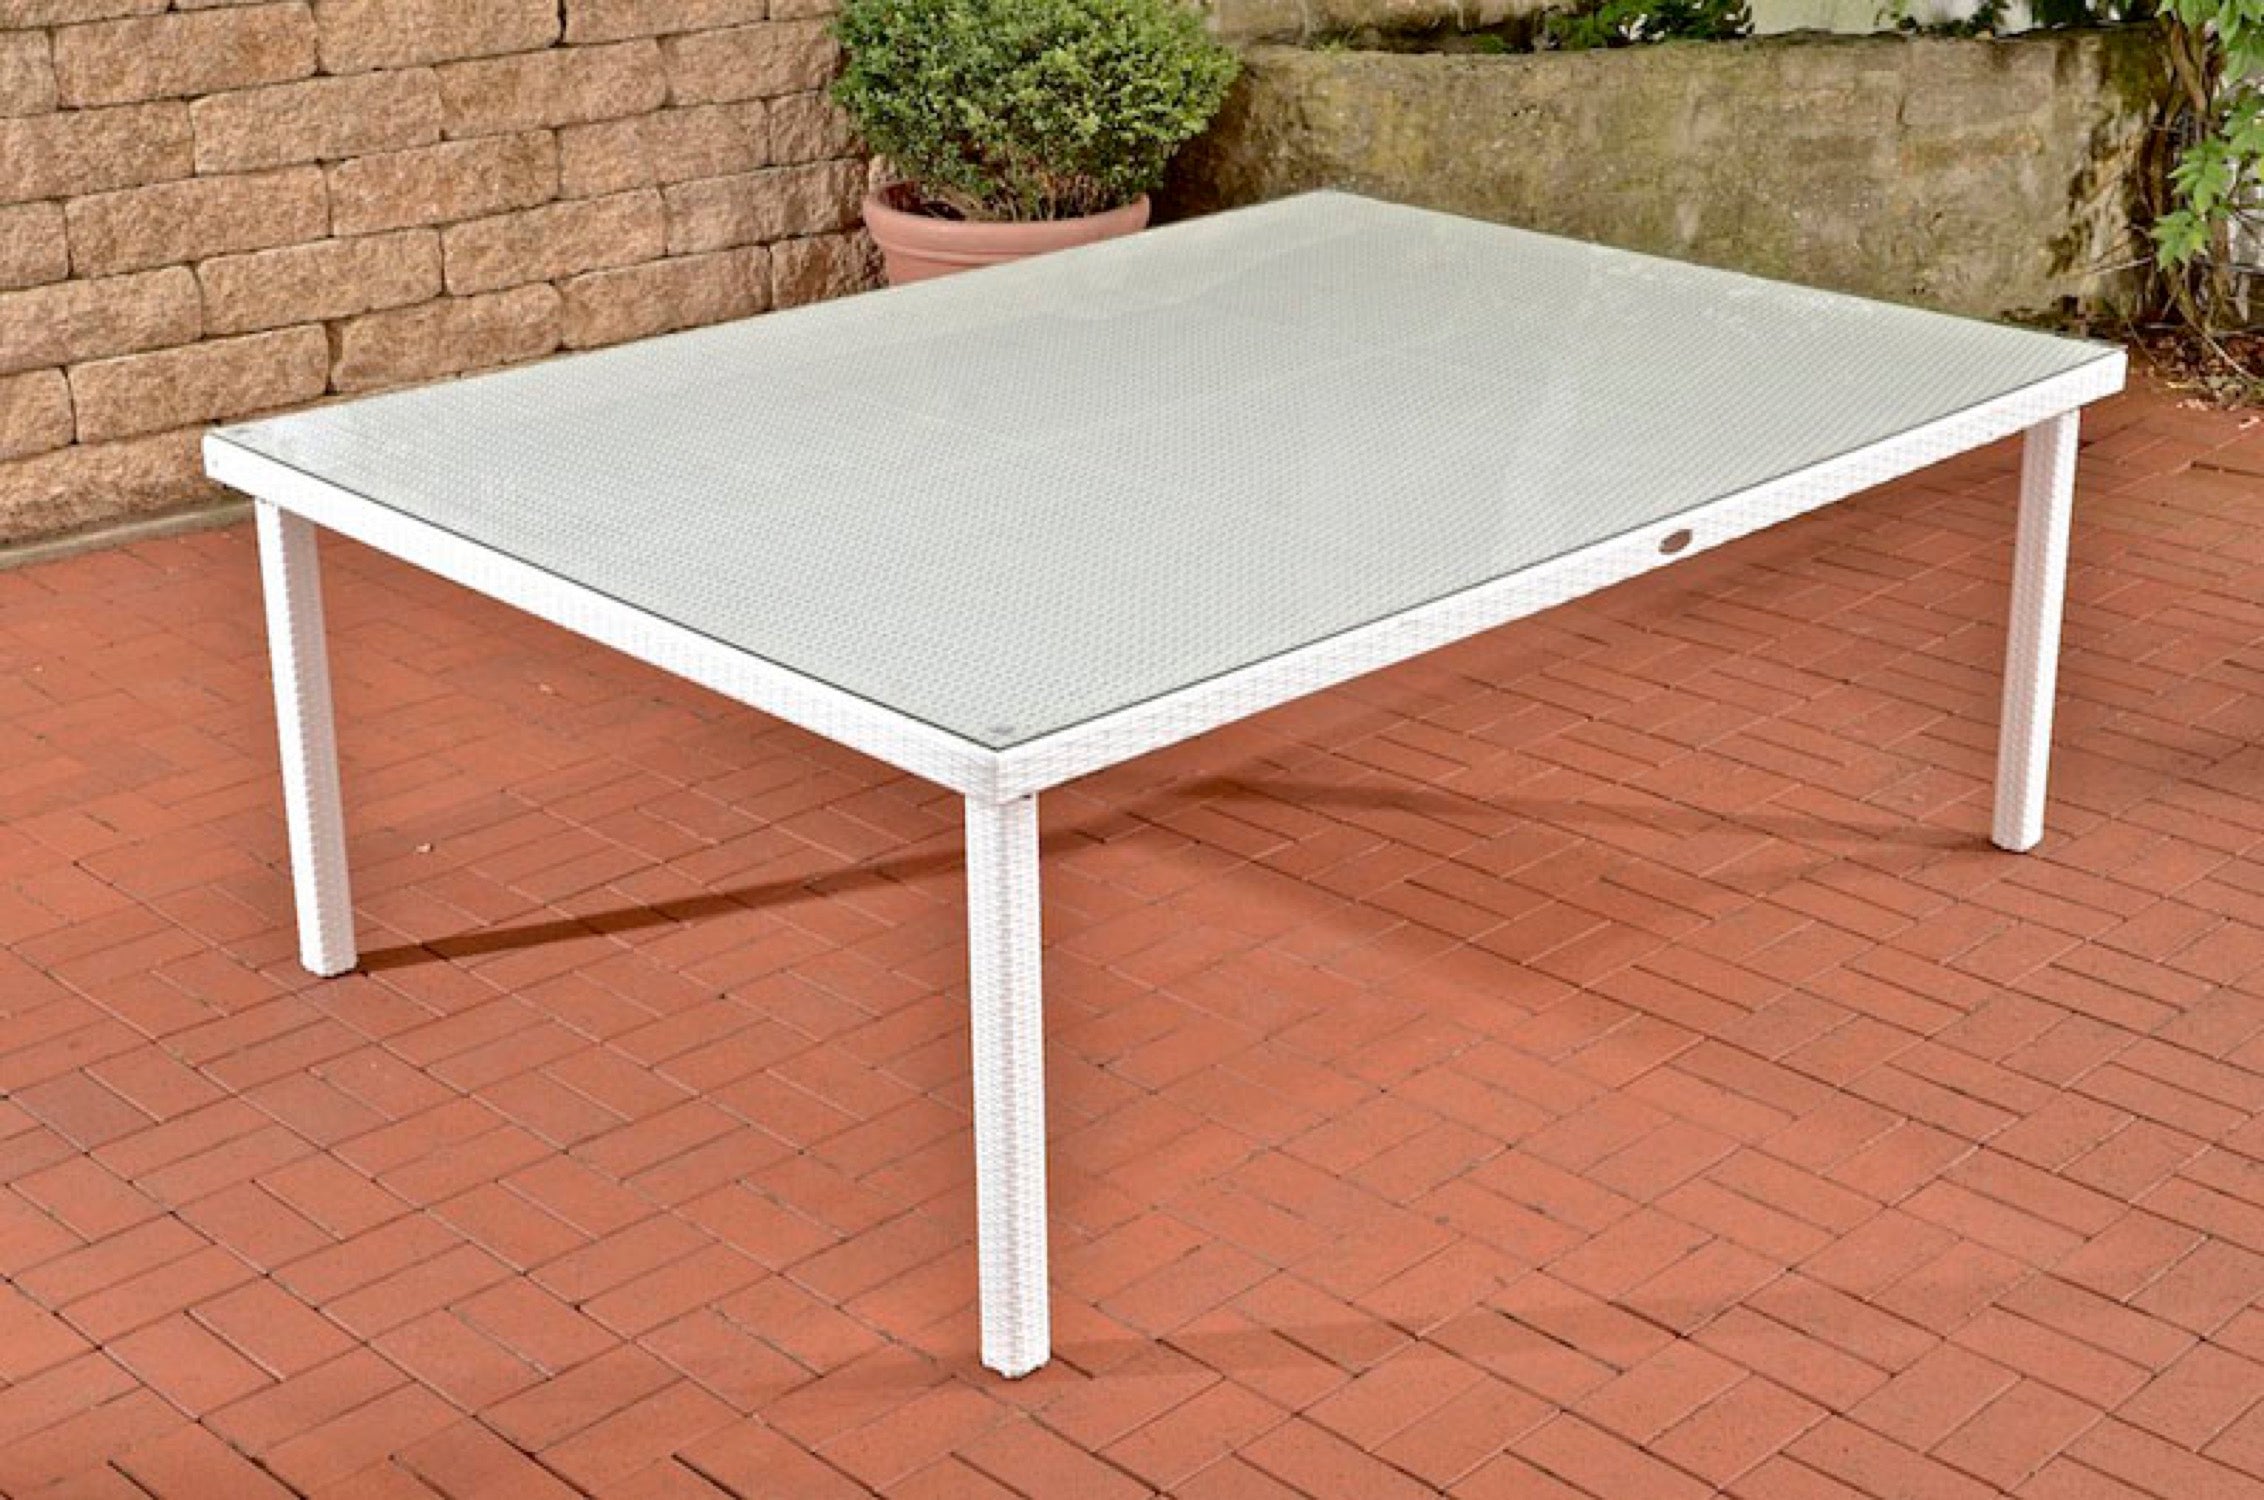 table 210x150 cm Pizera white – Traumpreisfabrik garden TPFGarden